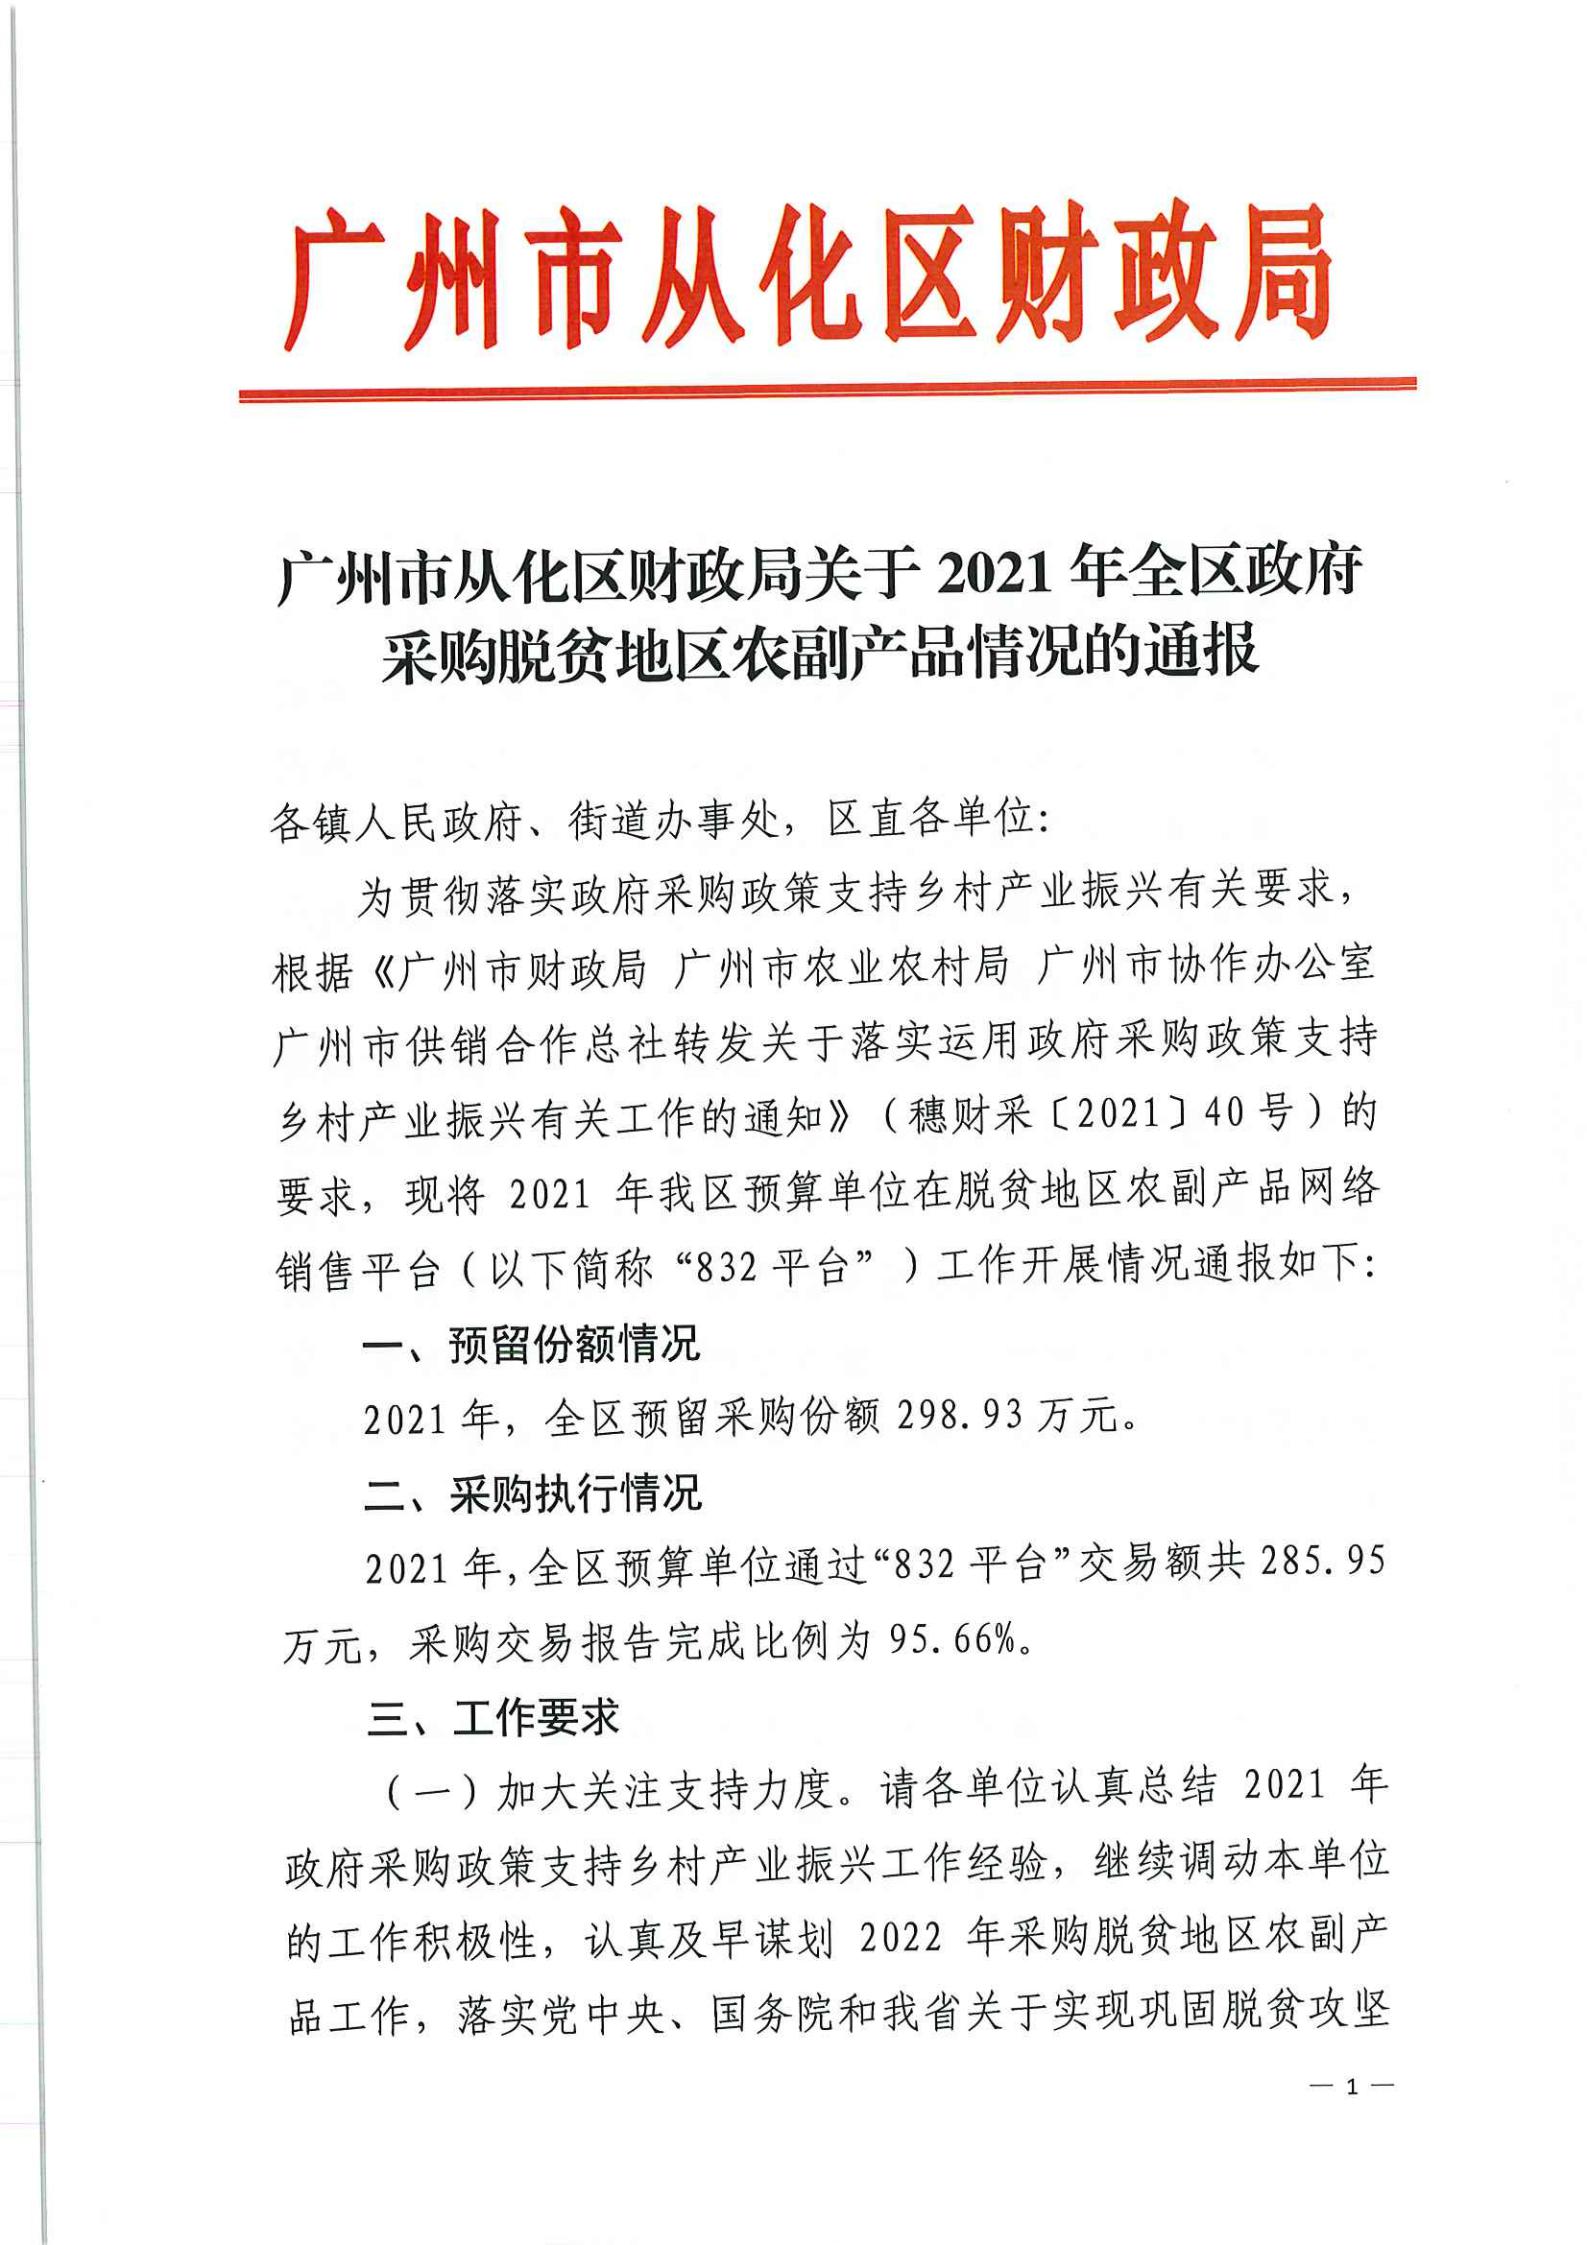 广州市从化区财政局关于2021年全区政府采购脱贫地区农副产品情况的通报_00.jpg